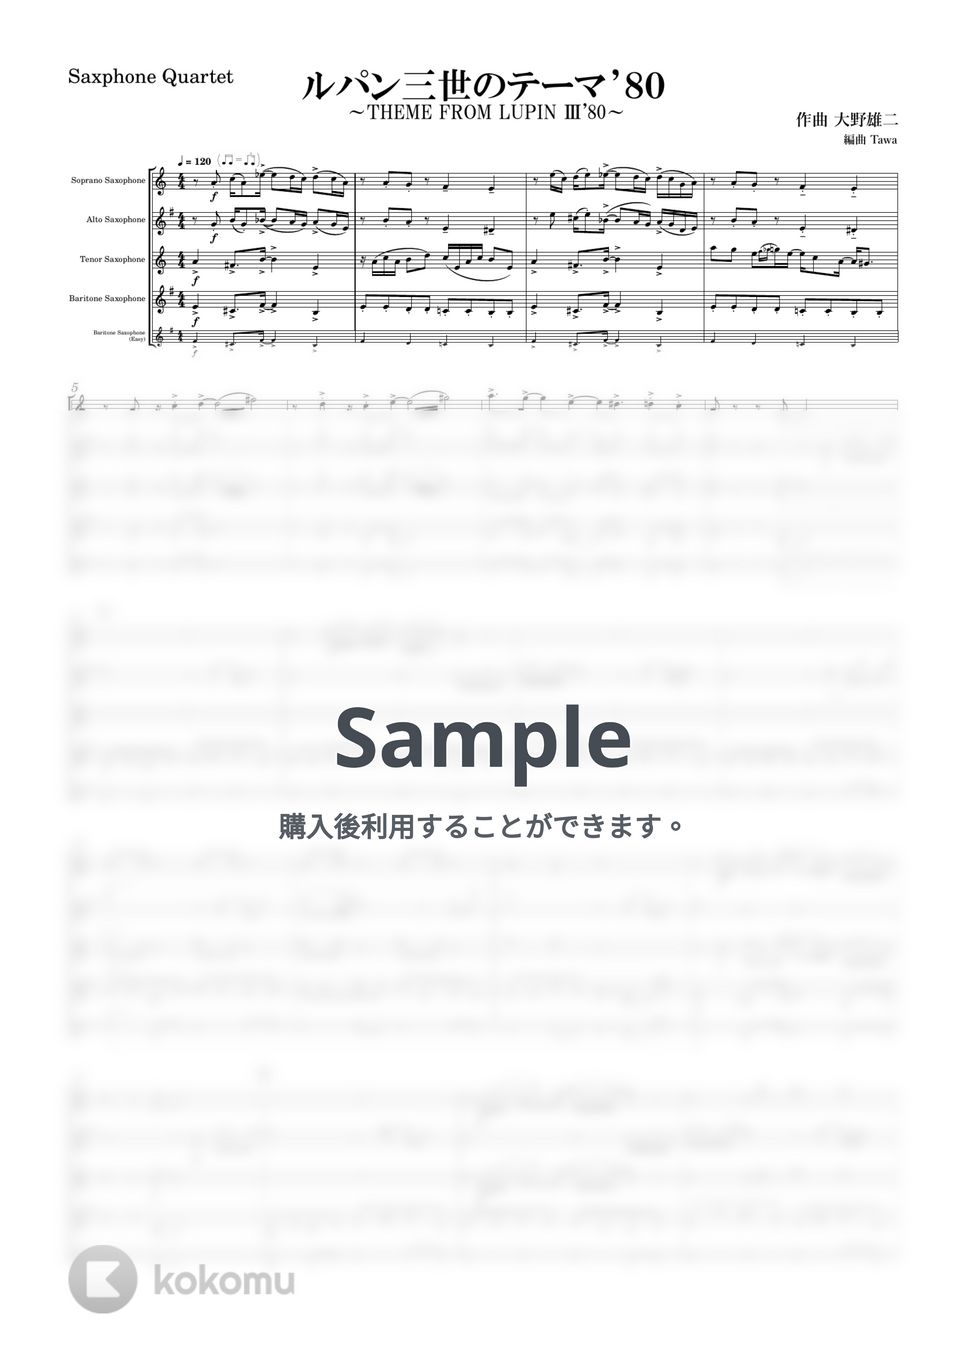 大野雄二 - ルパン三世のテーマ'80 (サックス四重奏 / Saxophone Quartet / パート譜付き) by Tawa